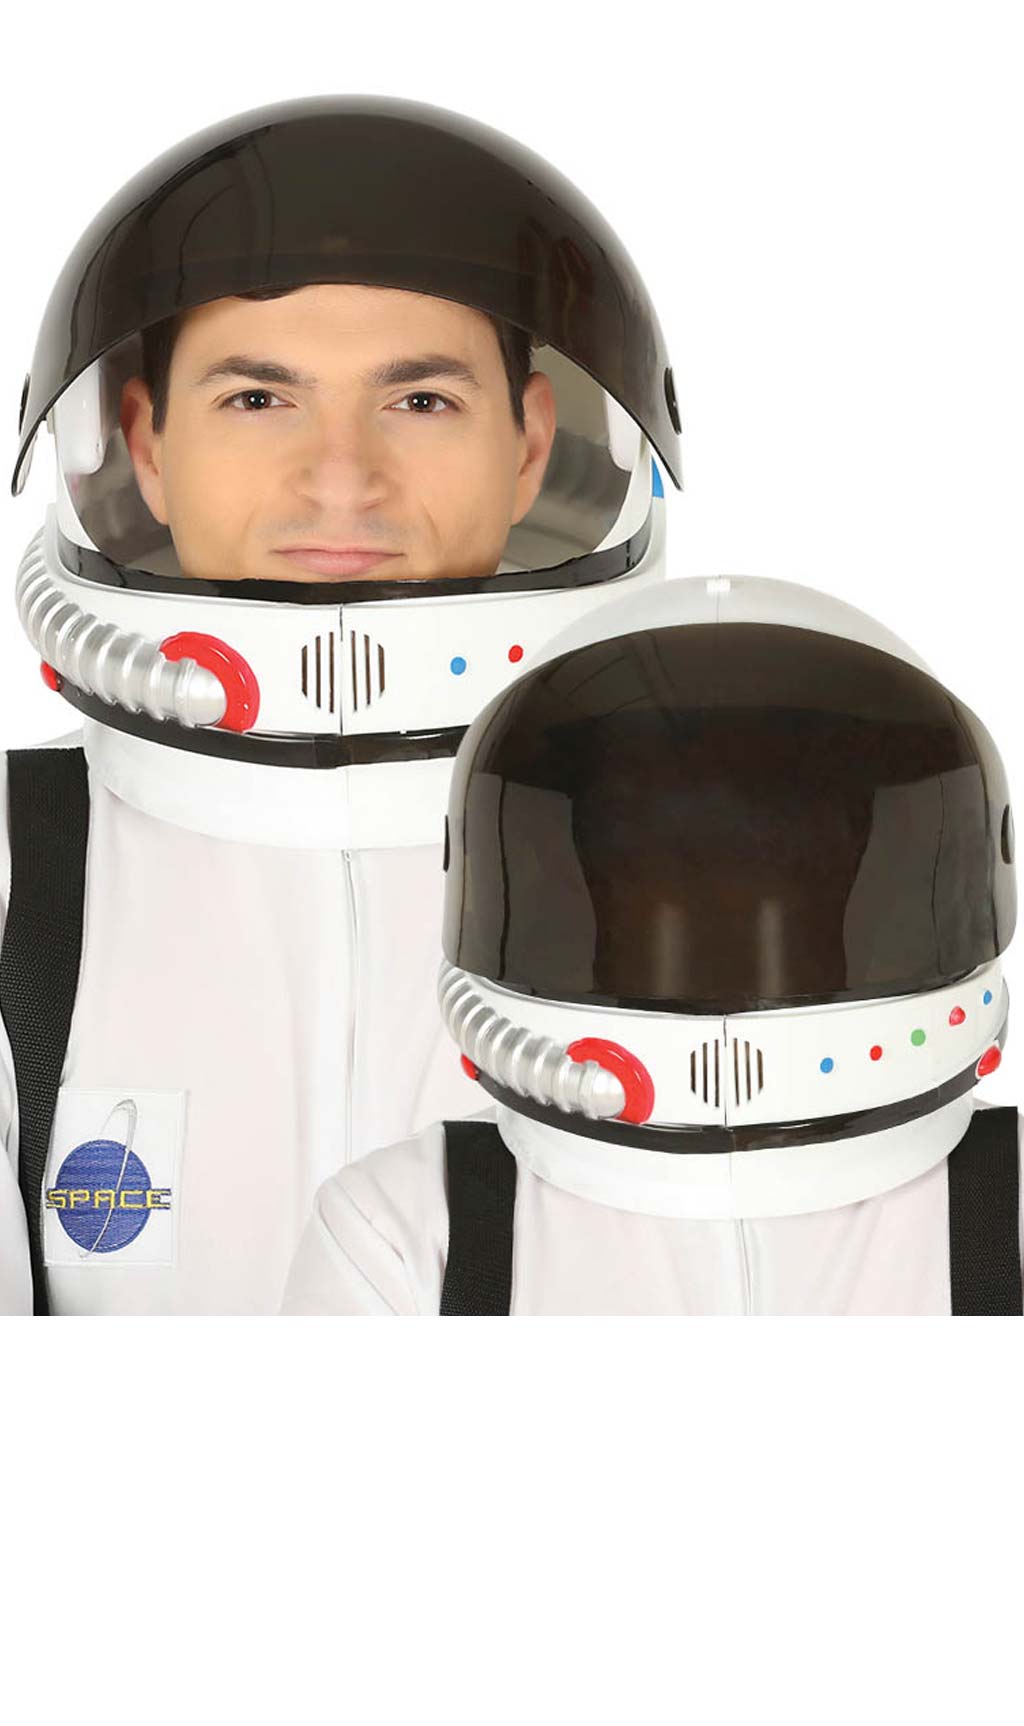 Casco da Astronauta Deluxe per adulto